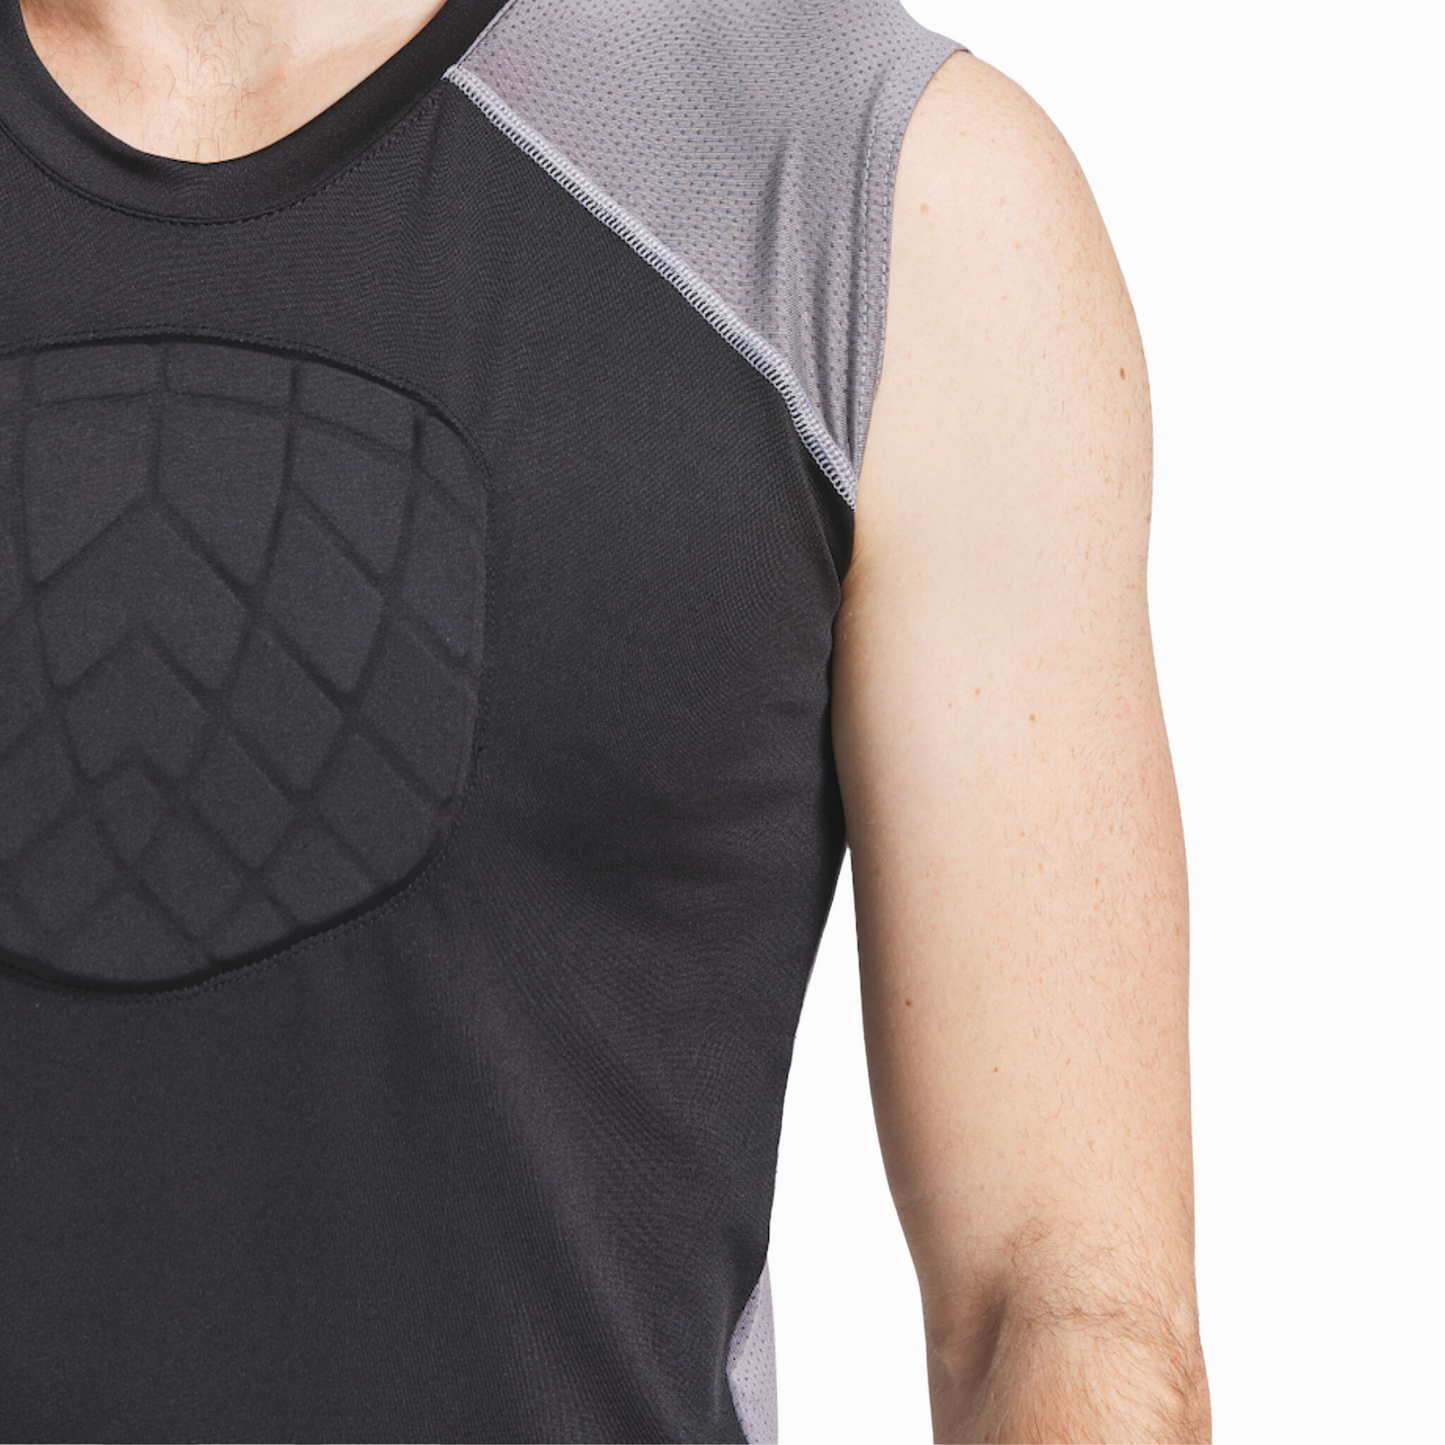 Baseball-Shirt-Brustschutz